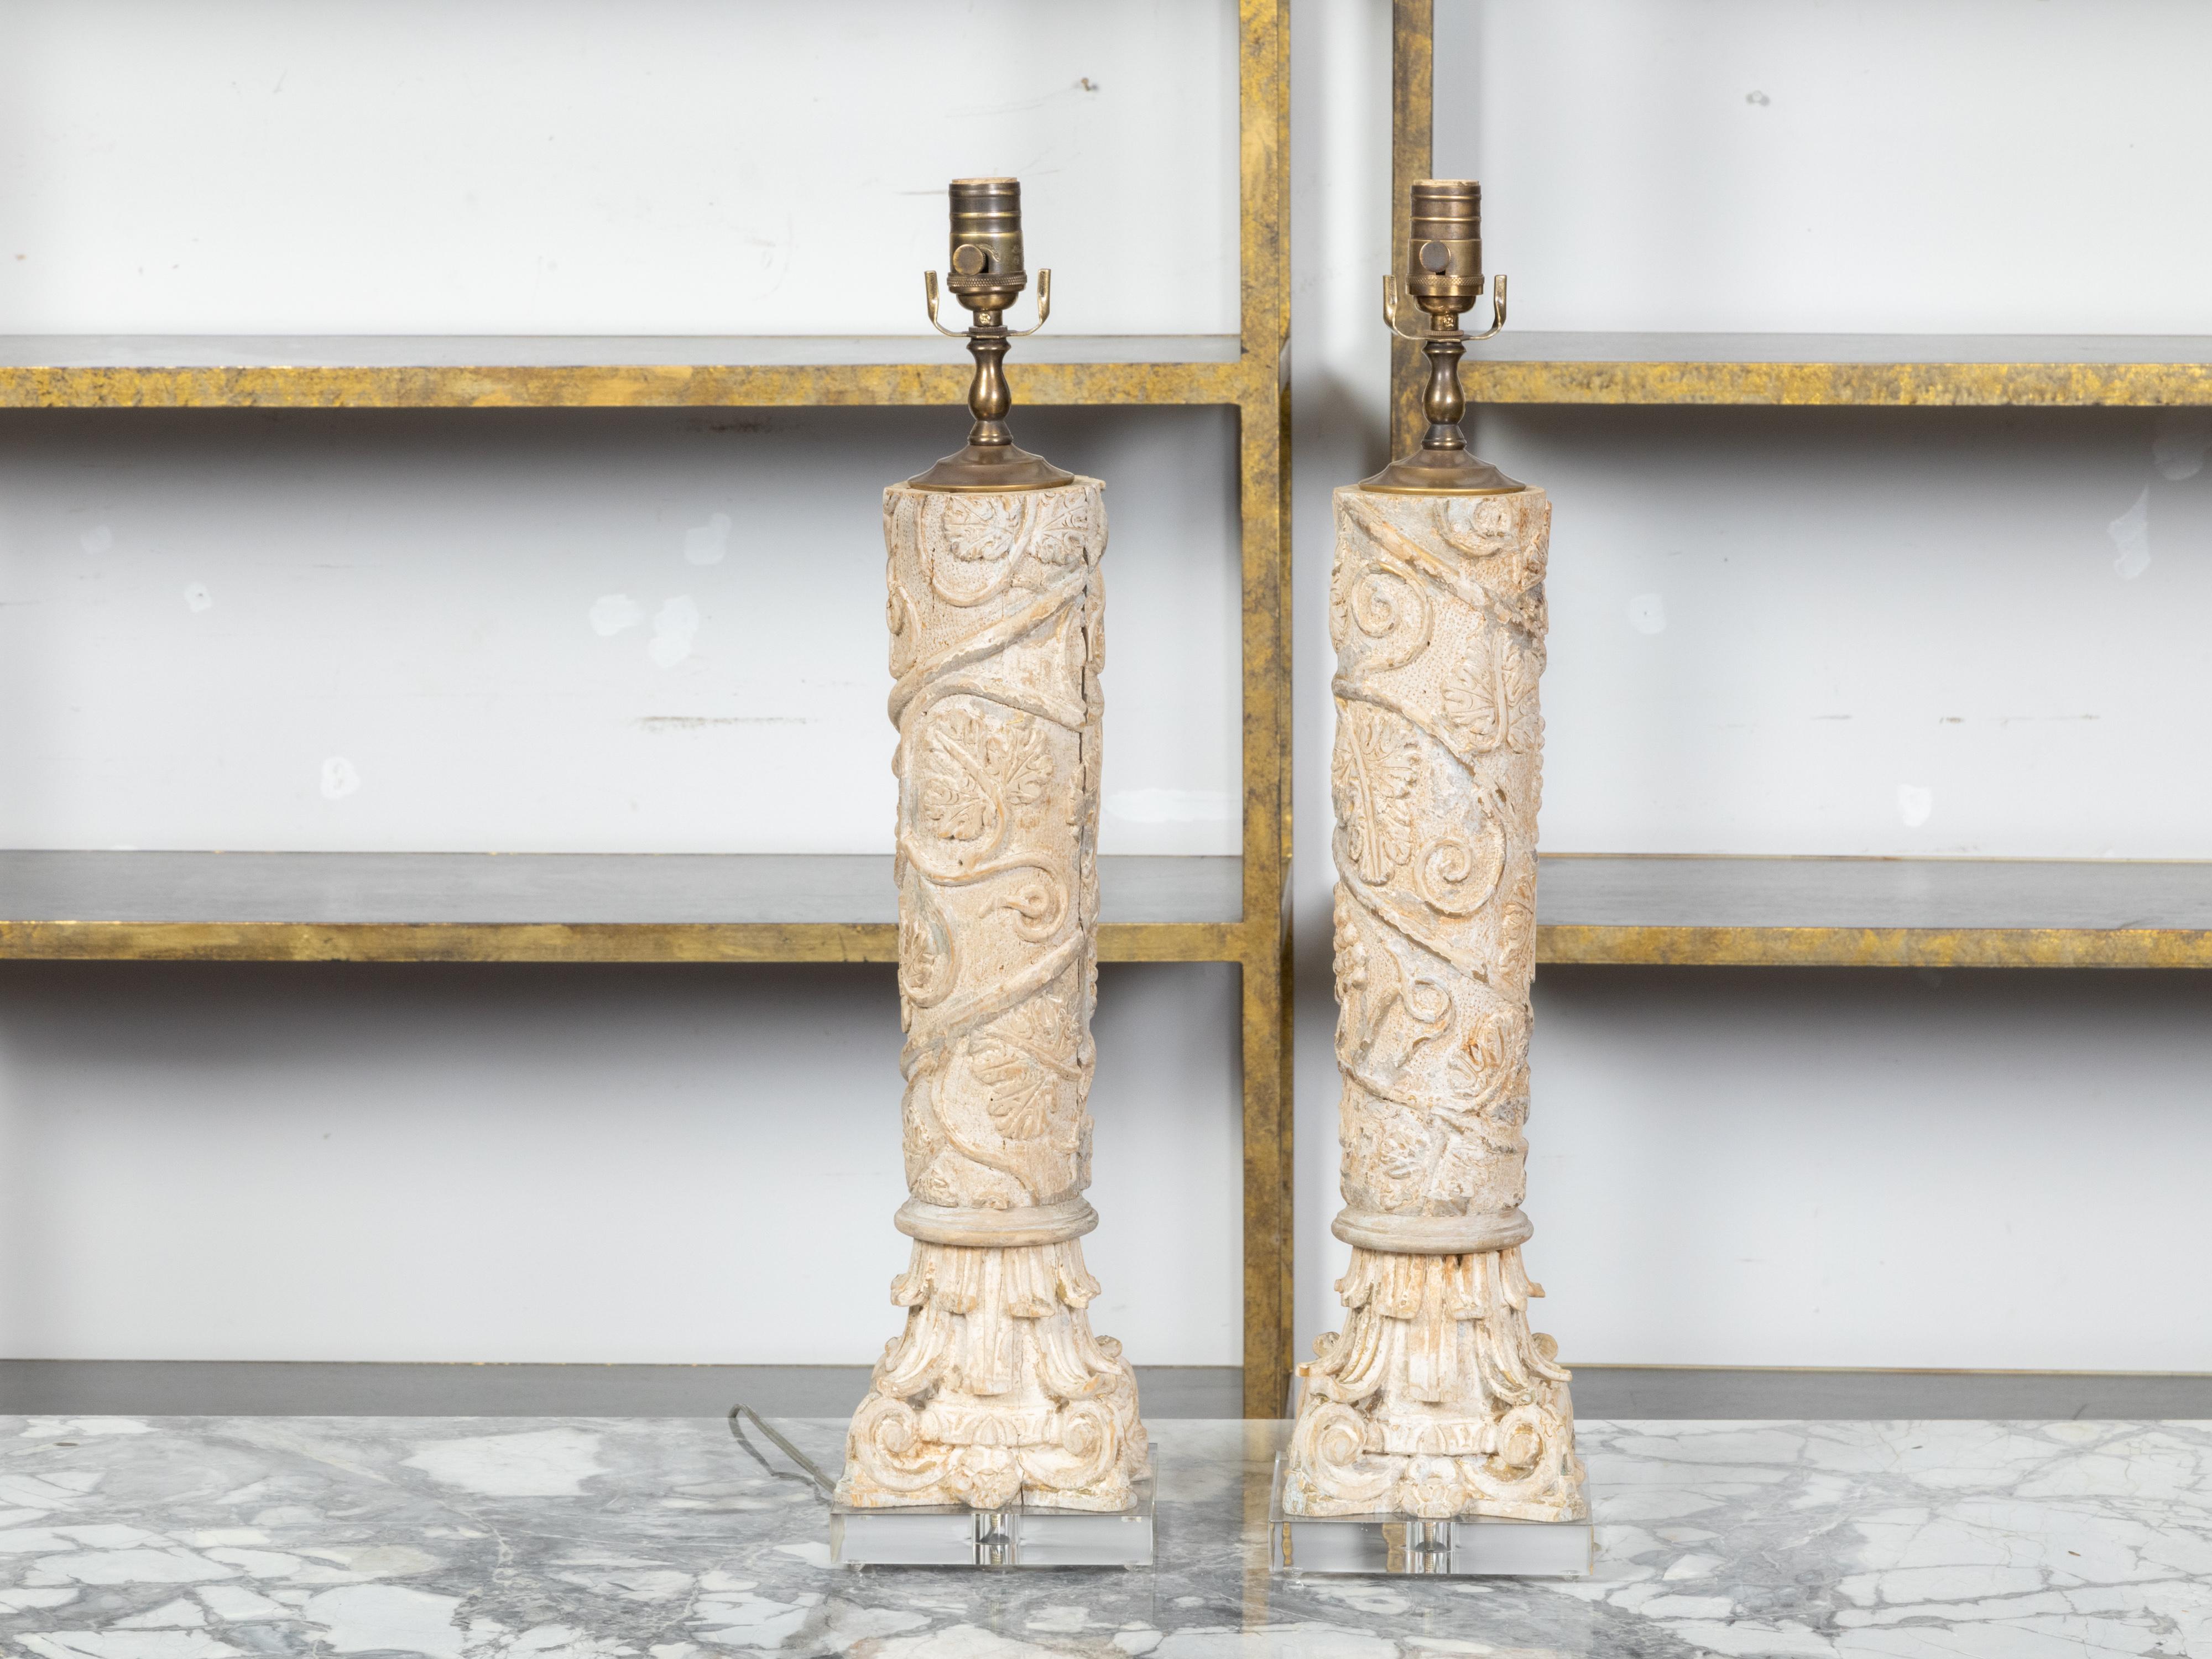 Une paire de fragments de colonnes en bois sculpté et peint de style classique italien du 19ème siècle représentant des feuillages en spirale et une base de style corinthien, transformés en lampes de table modernes montées sur des bases en lucite.